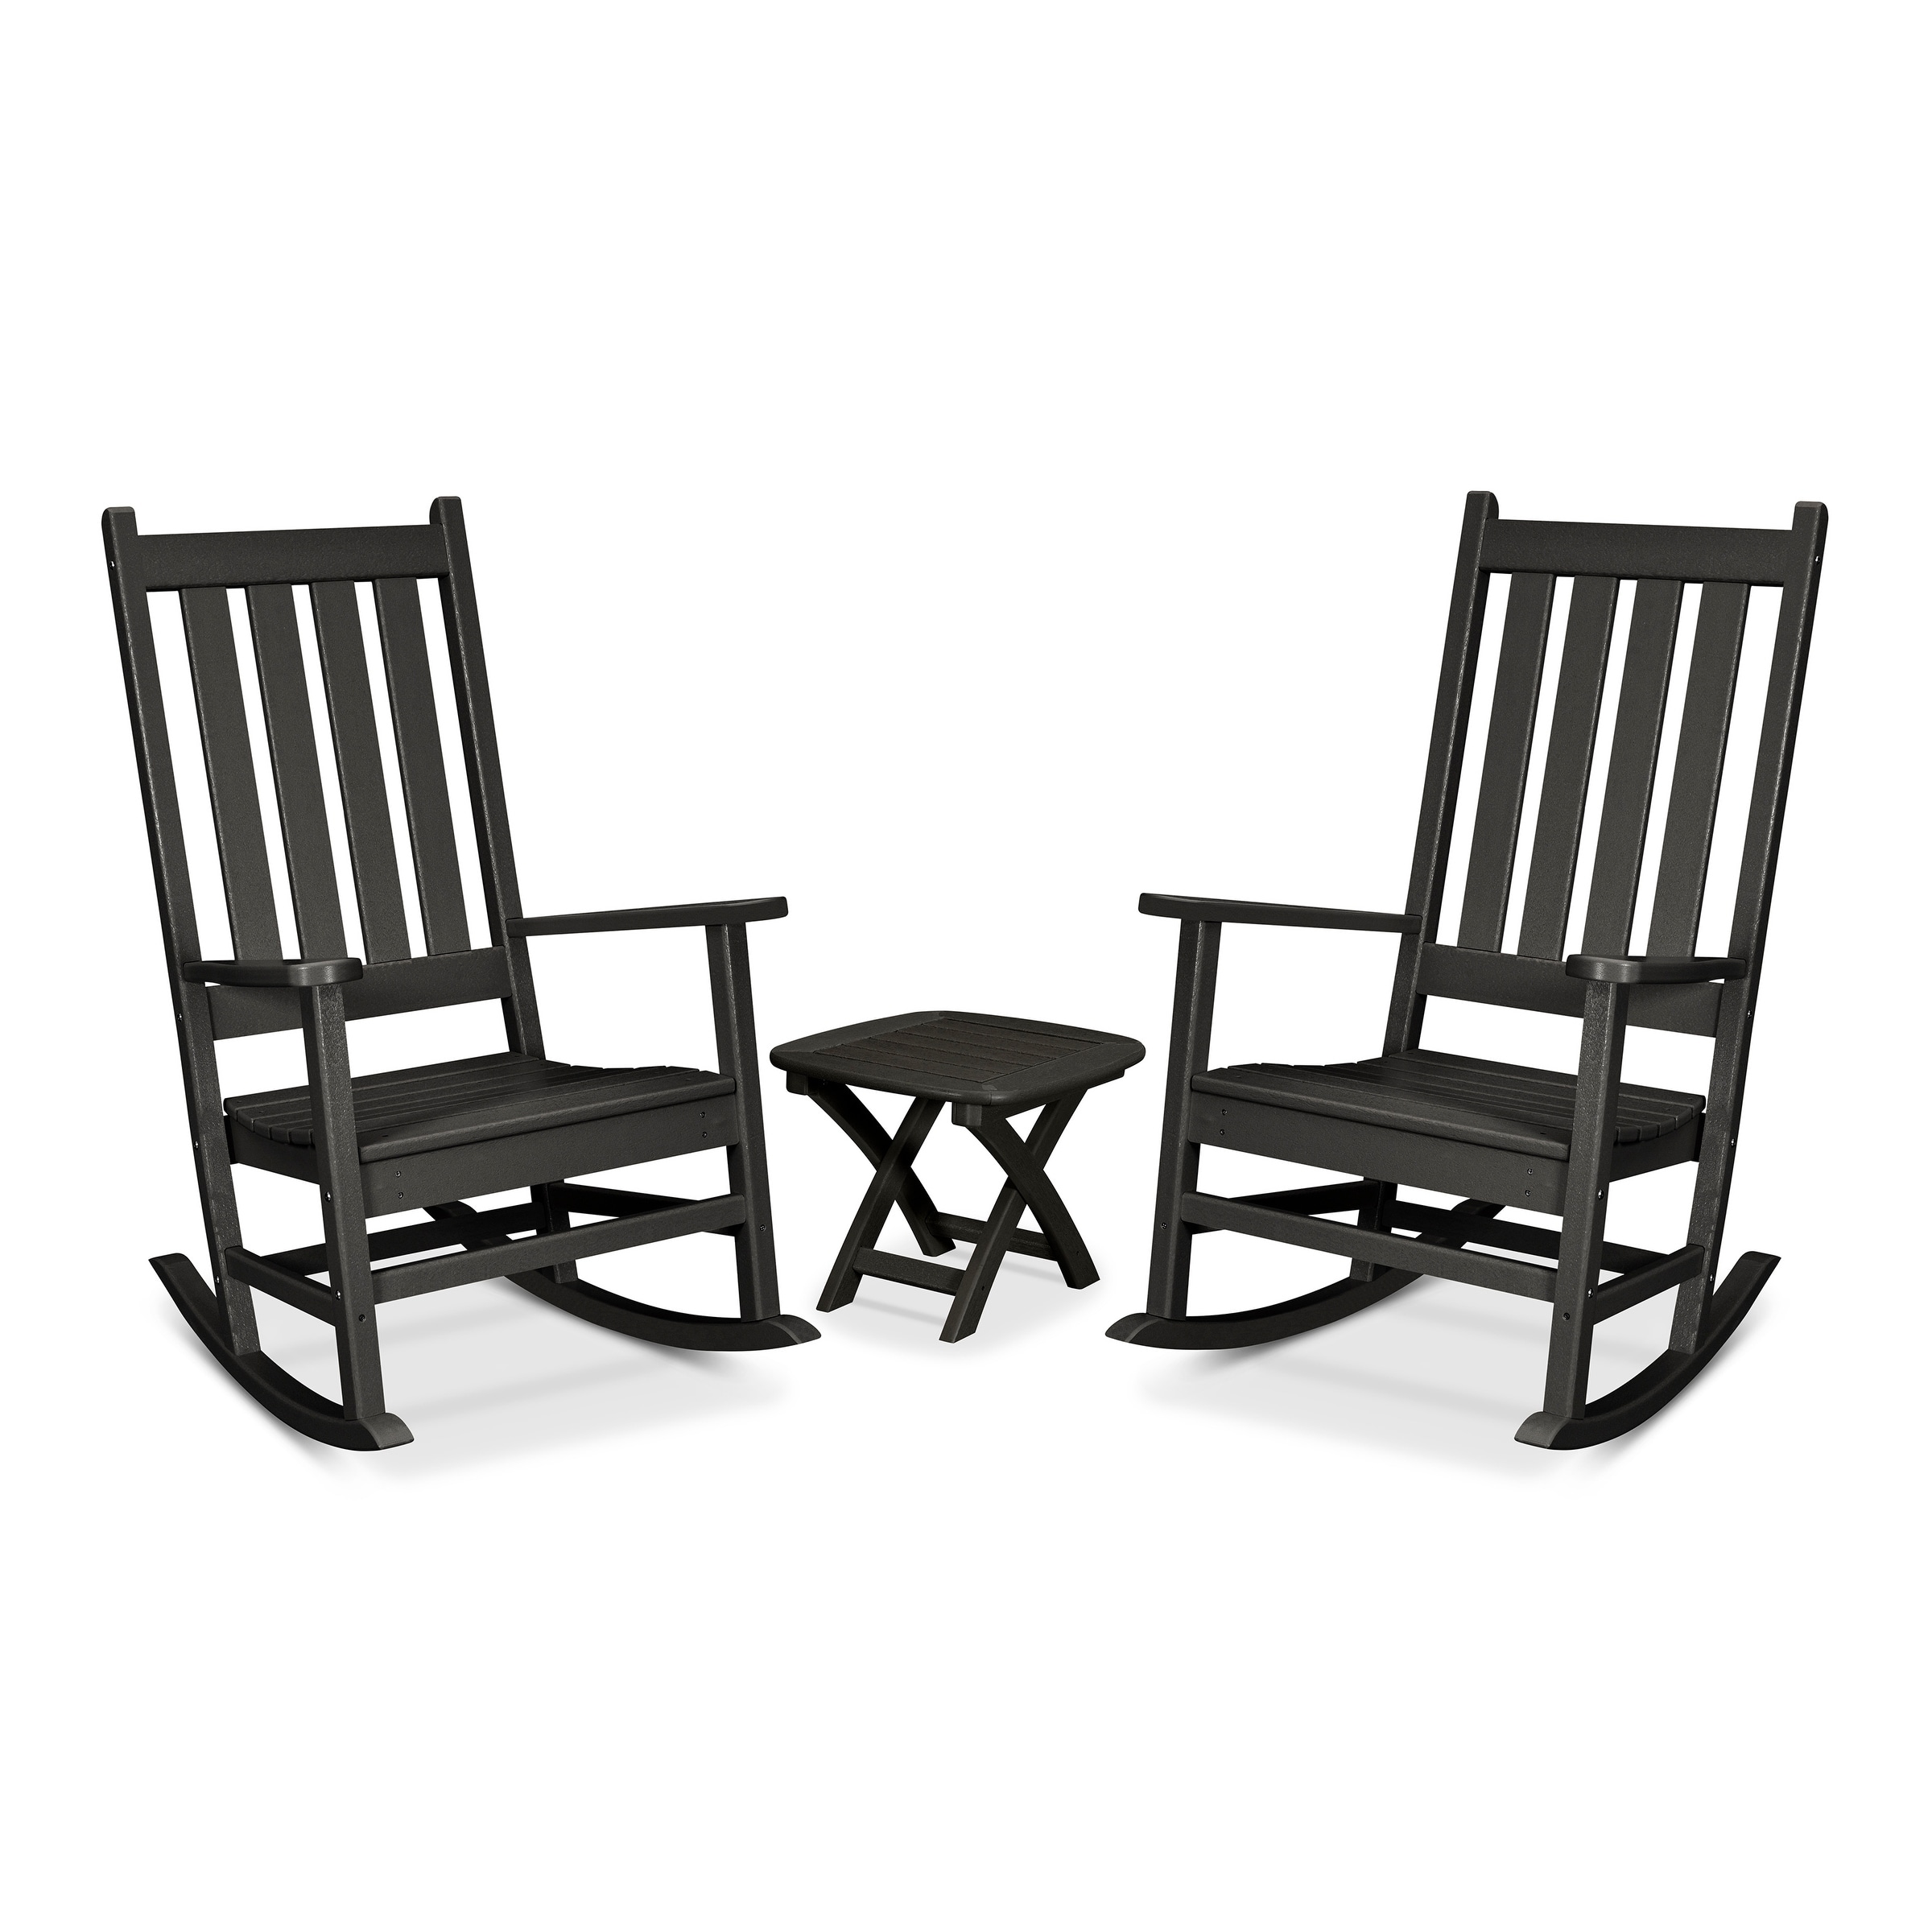 Trex Outdoor Furniture Cape Cod 3-piece Porch Rocking Chair Set